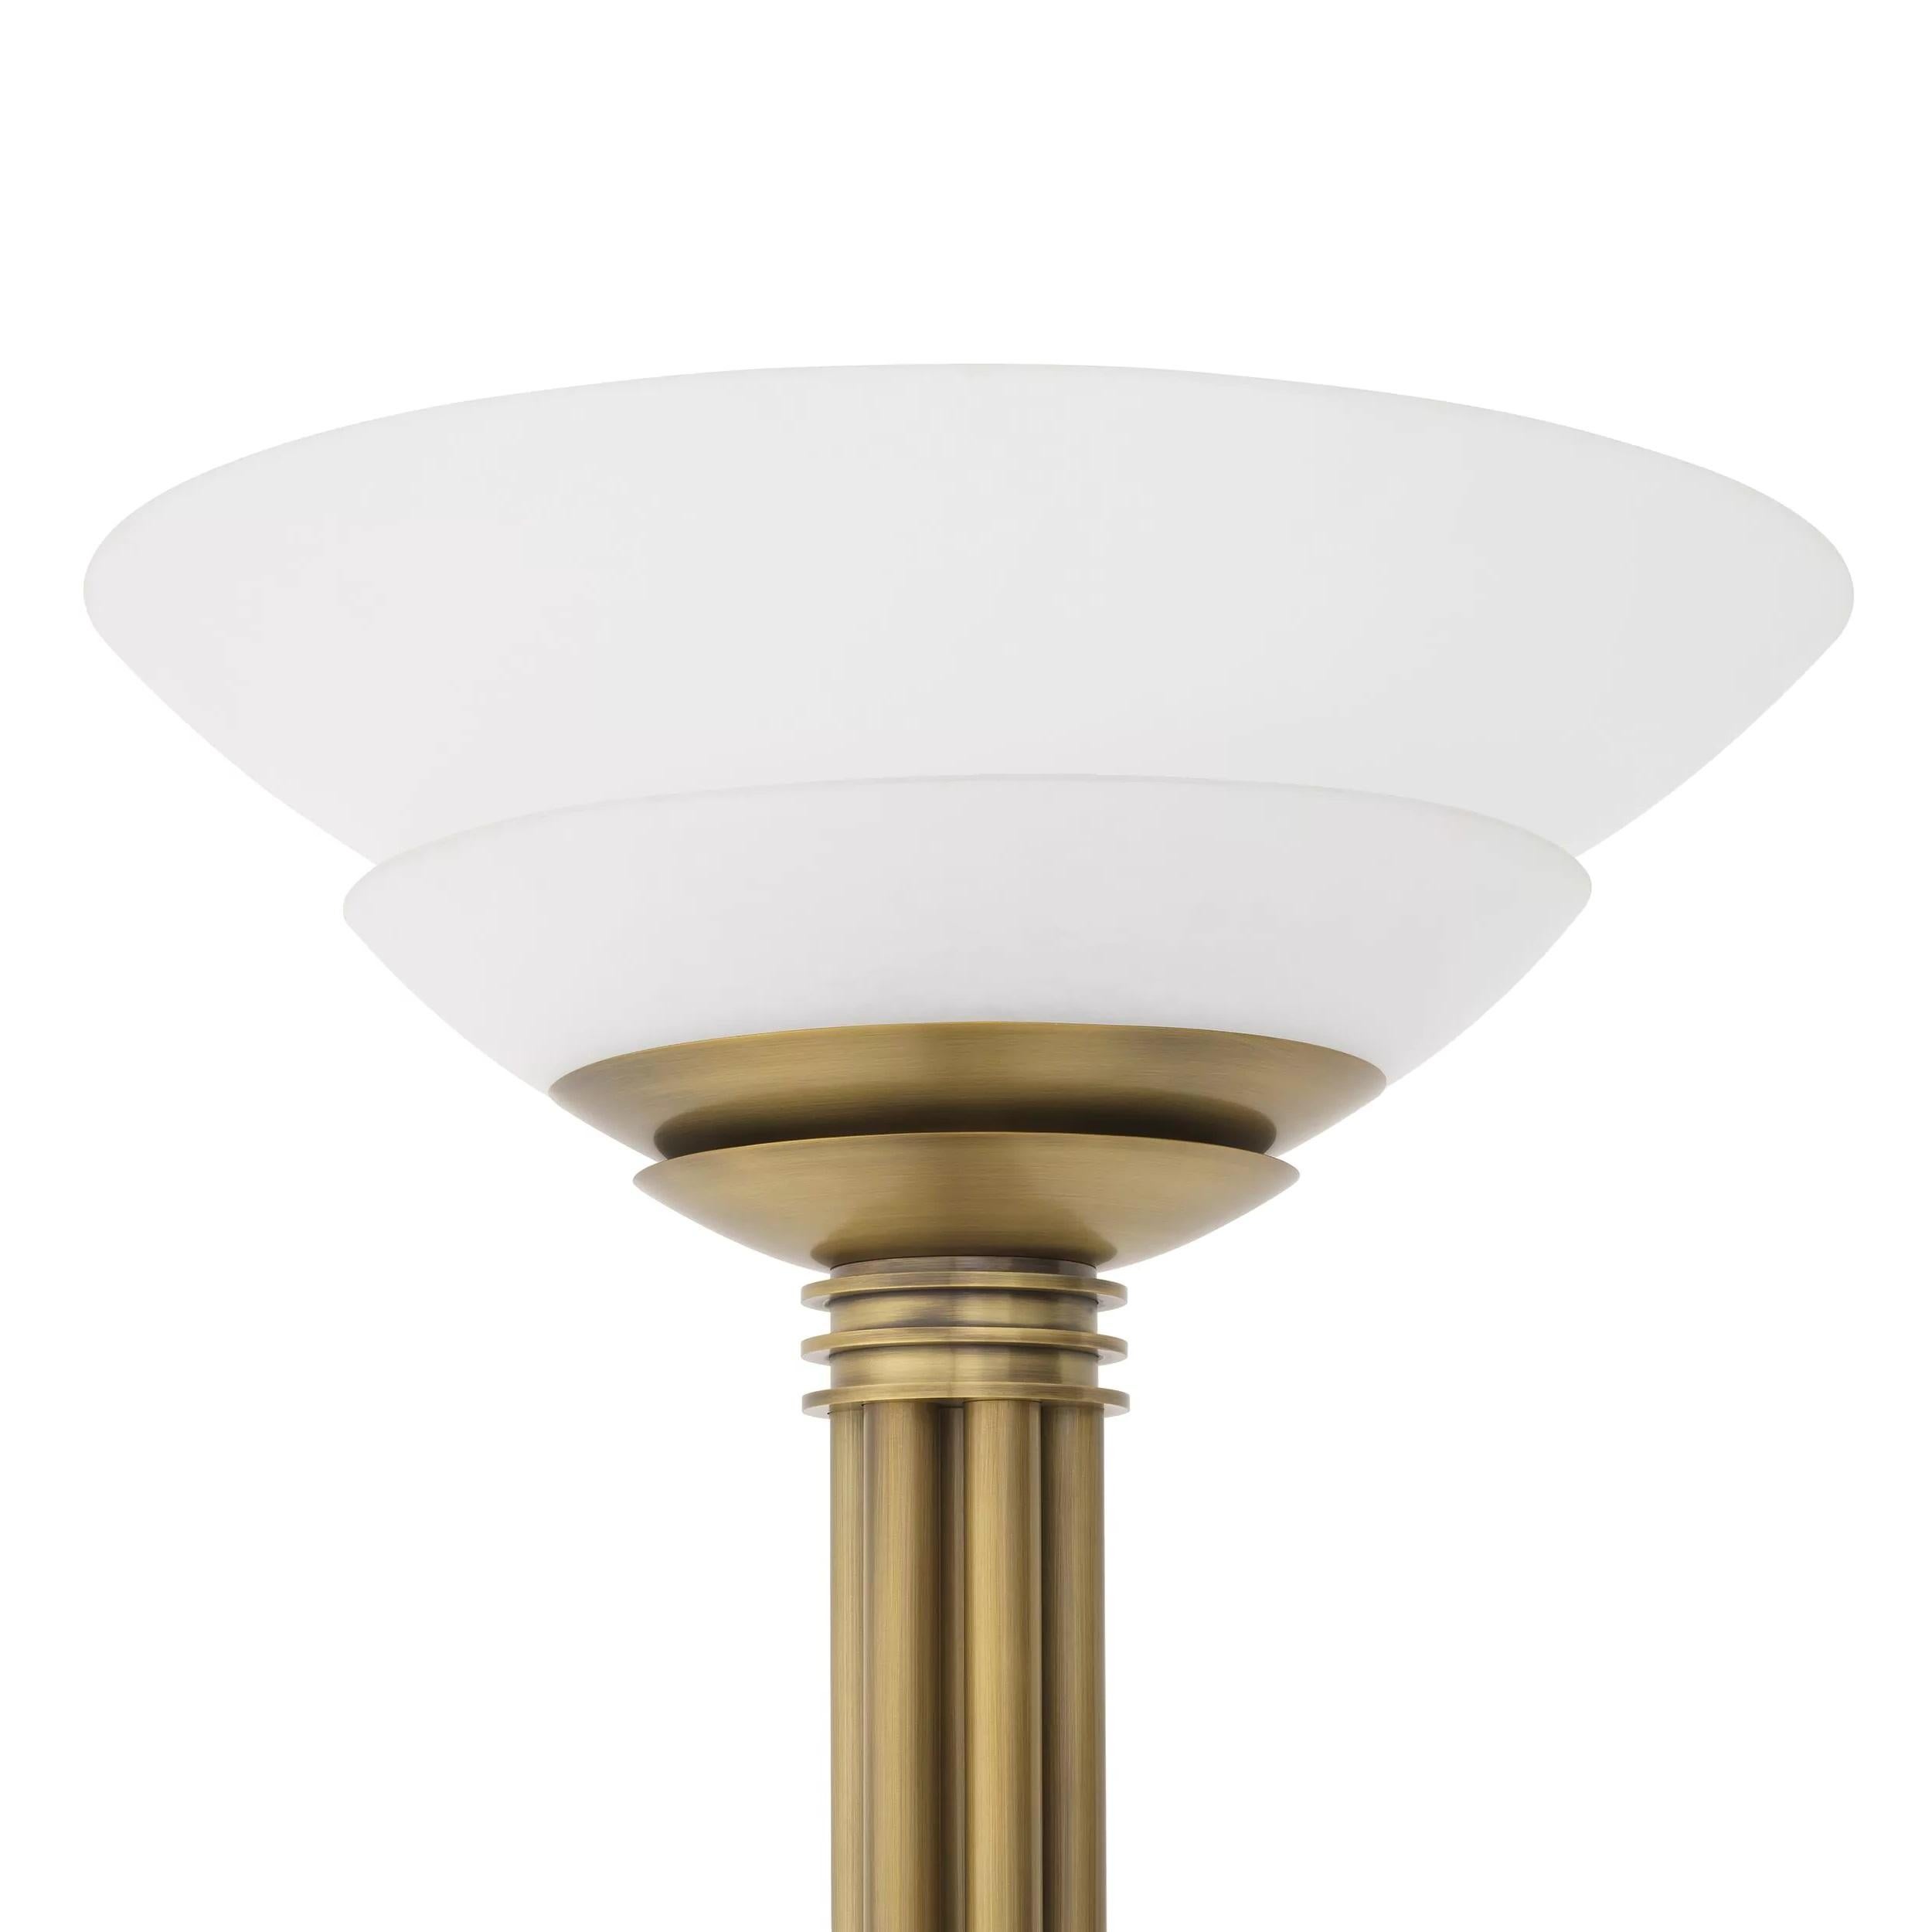 1920er Design und Art Deco-Stil Messing und weißem Opalglas Stehlampe, bestehend aus einem Messing beendet Metallstruktur mit handgefertigten weißen Opalglas zweistufigen schalenförmigen Schirmen geschmückt. 1 E27 Glühbirne erforderlich.